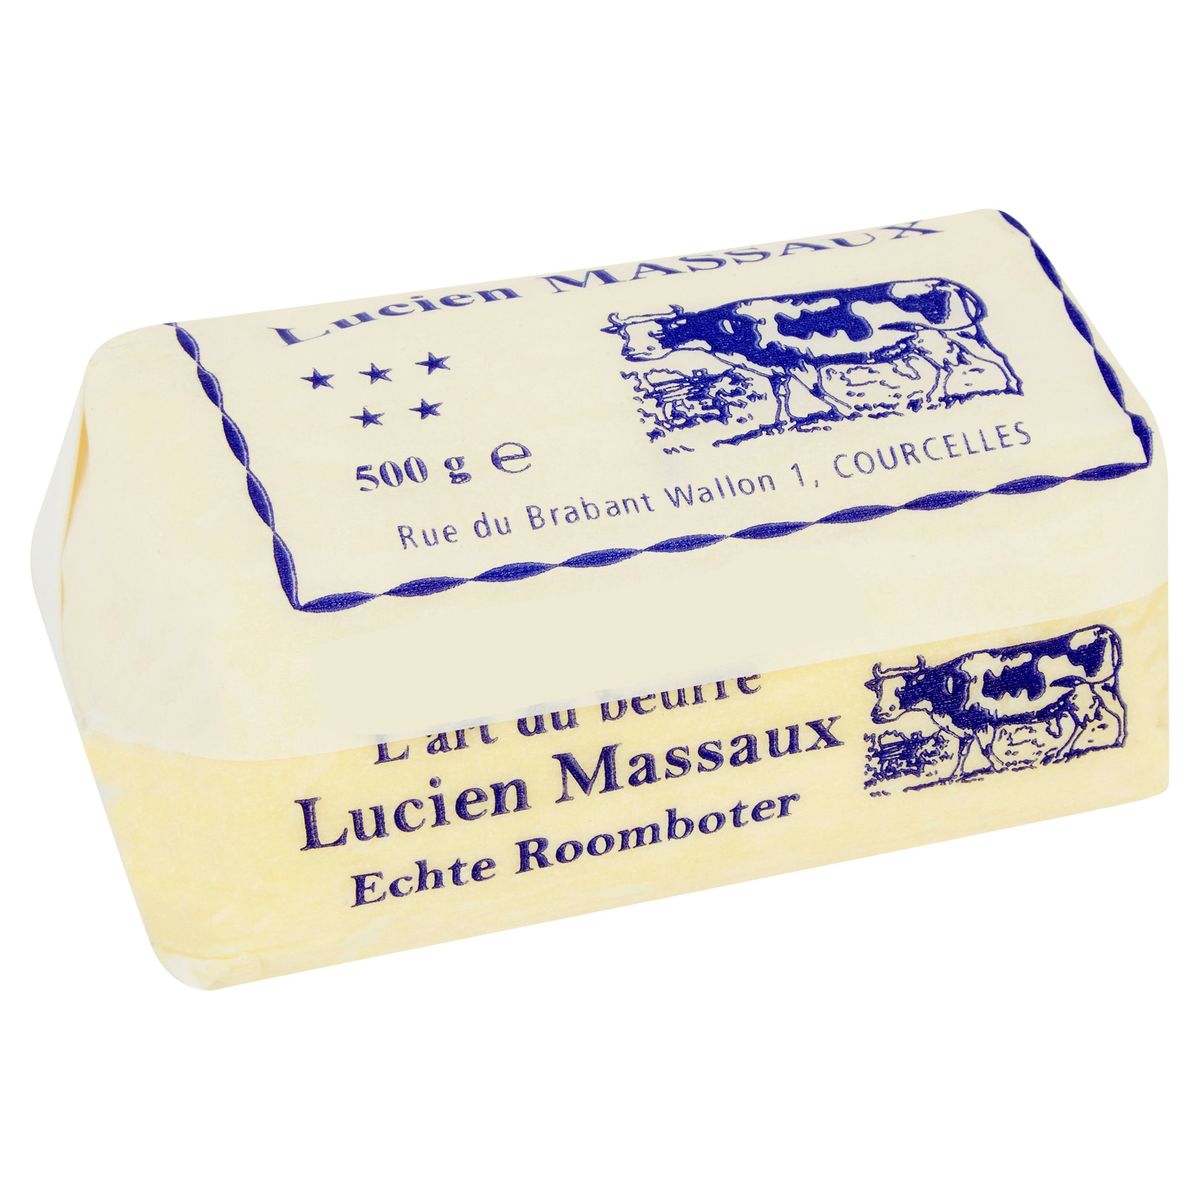 Lucien Massaux L'Art du Beurre 500 g